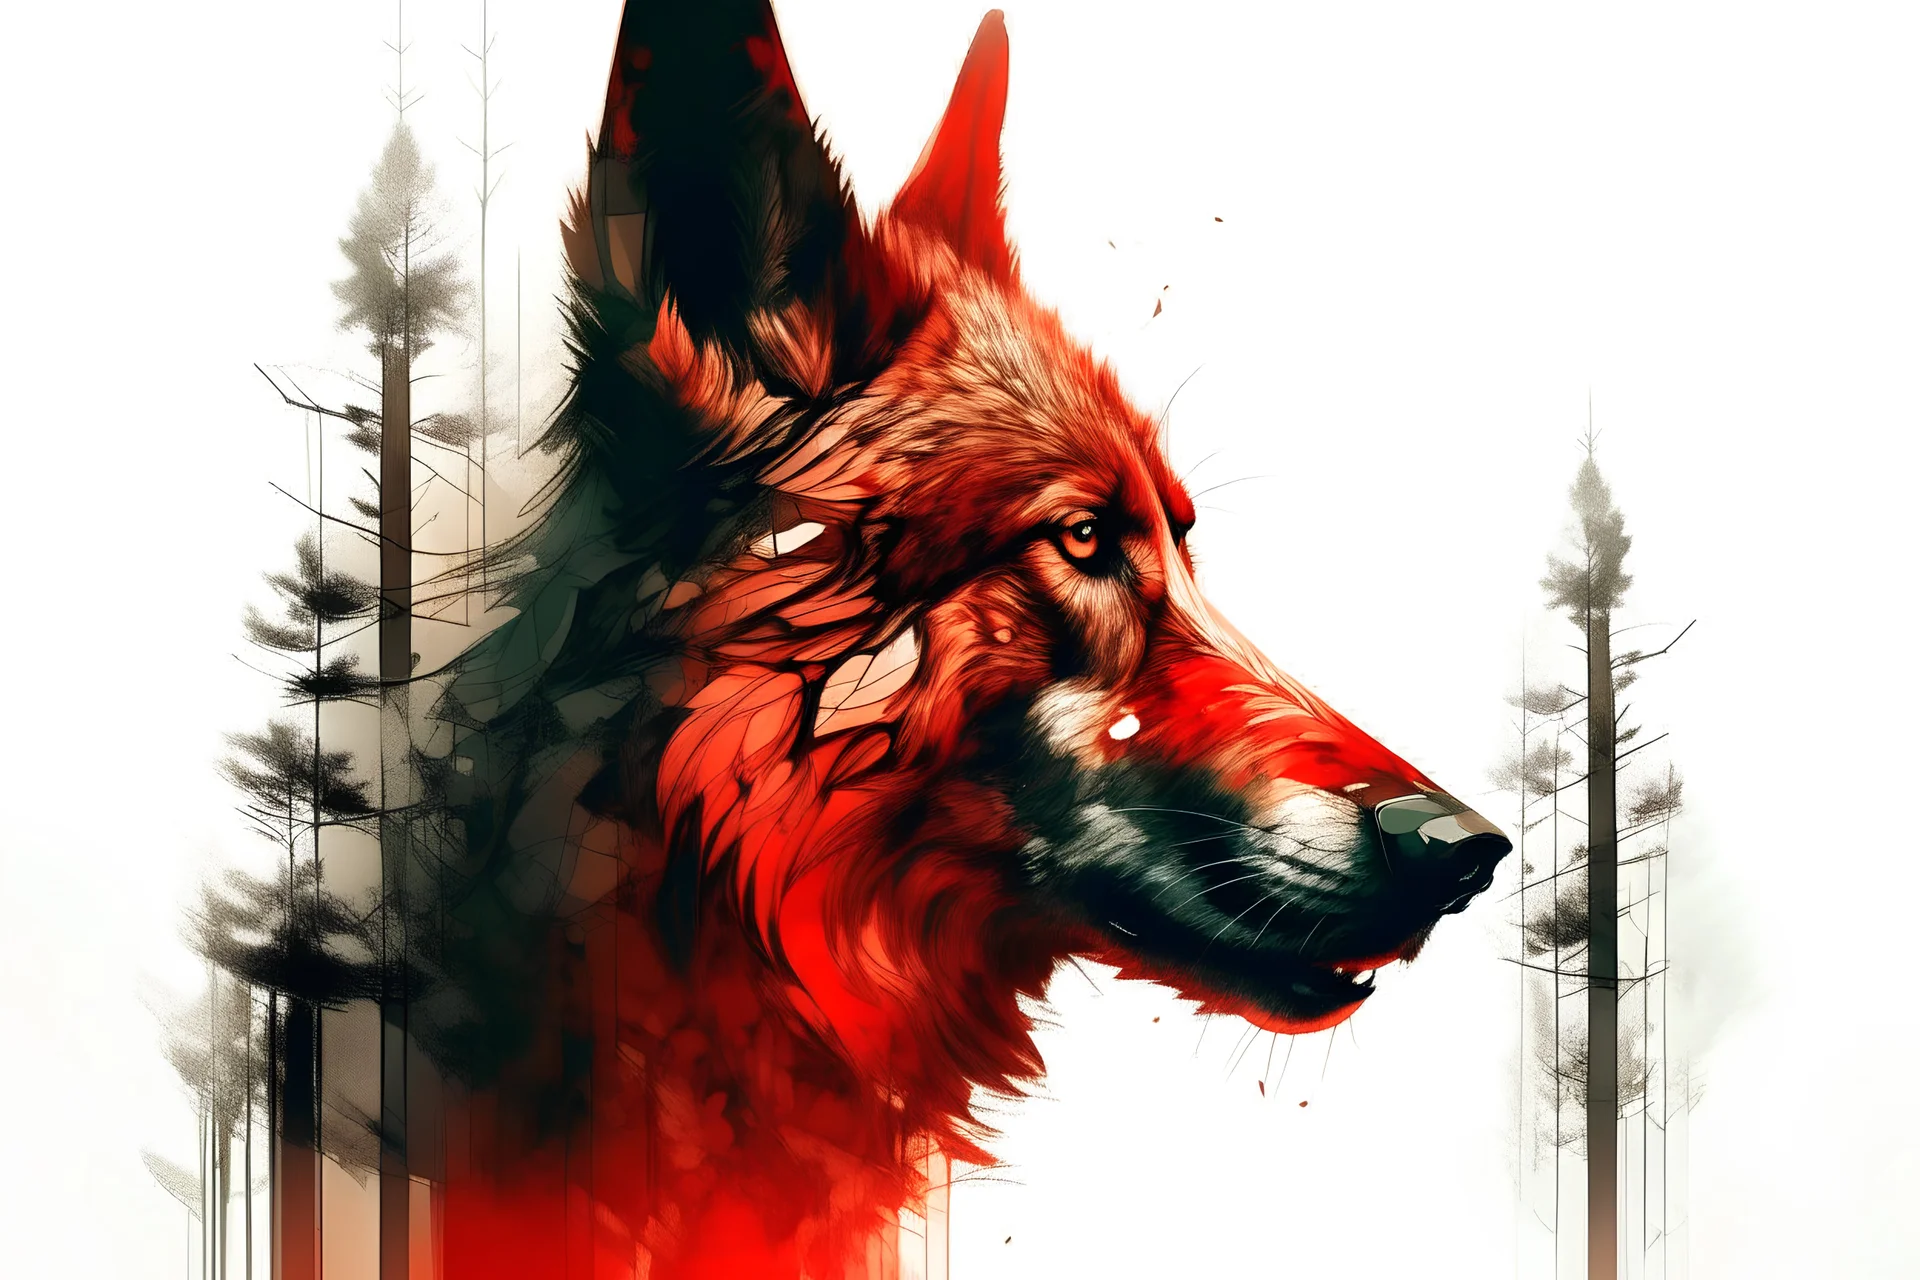 Pintura en doble exposicion de caperucita roja y un perfil de lobo siniestro, foco nítido, fondo claro de un bosque.